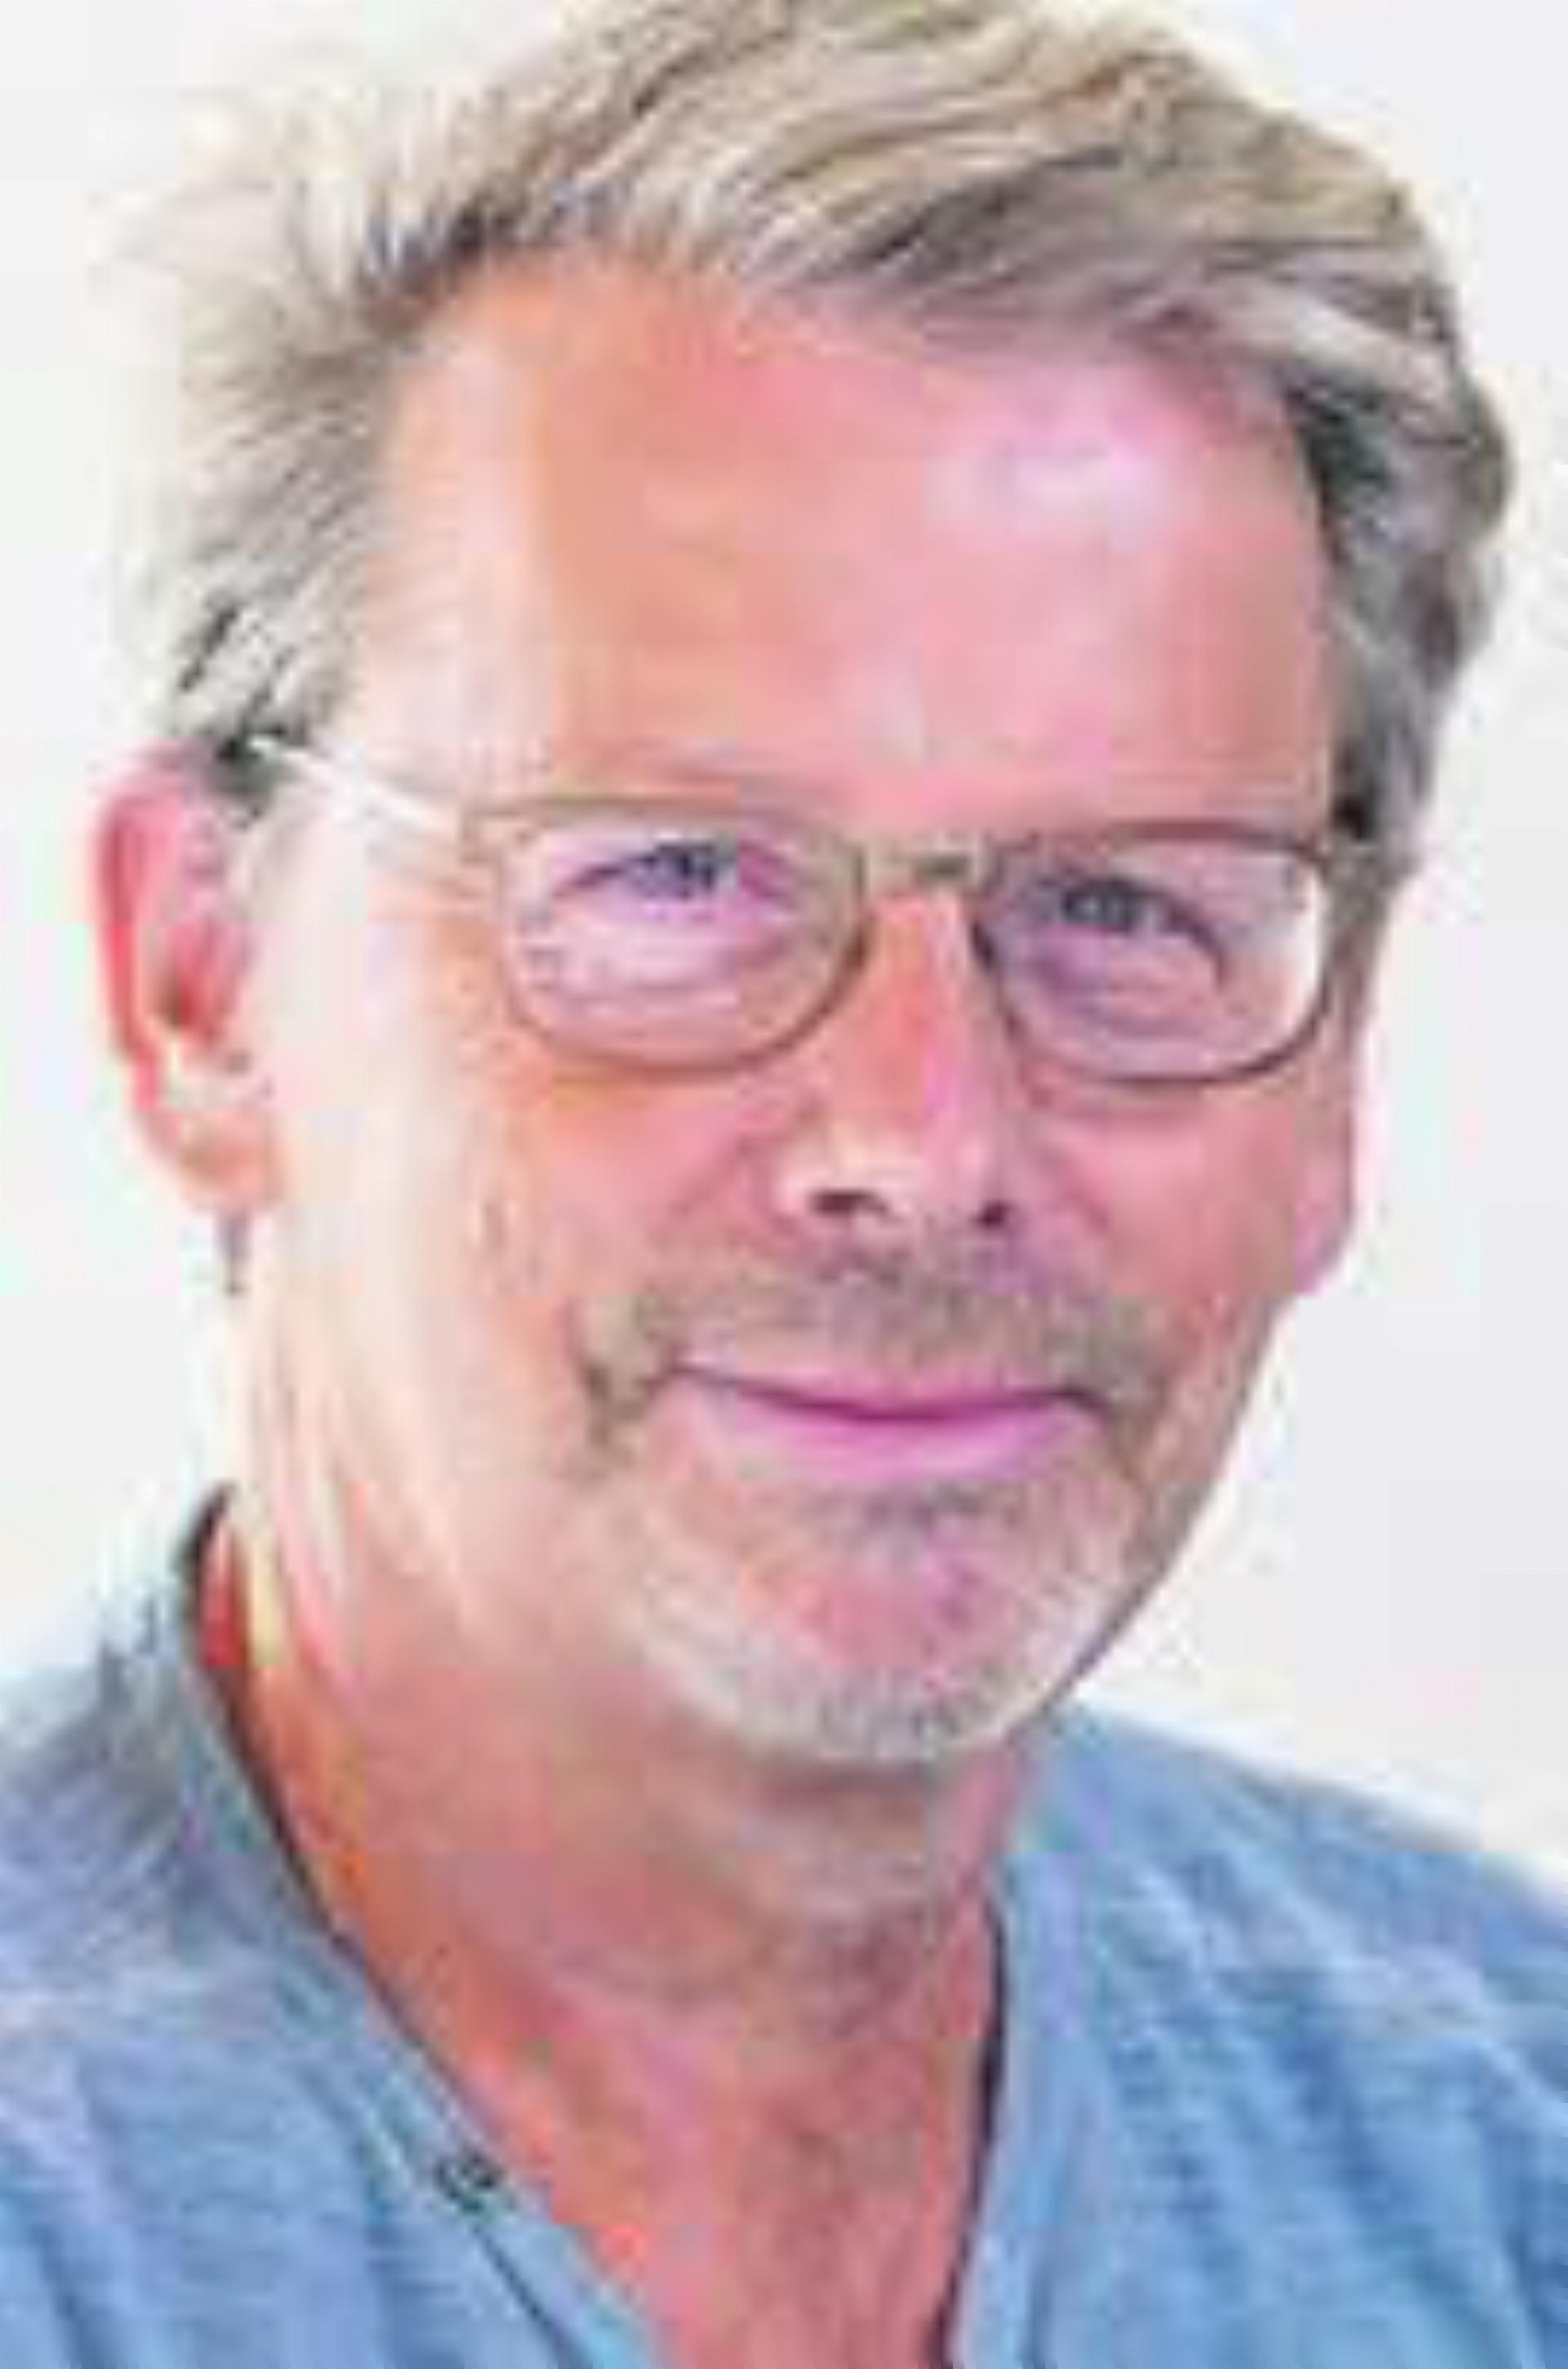 Chregi Hansen, Redaktor.